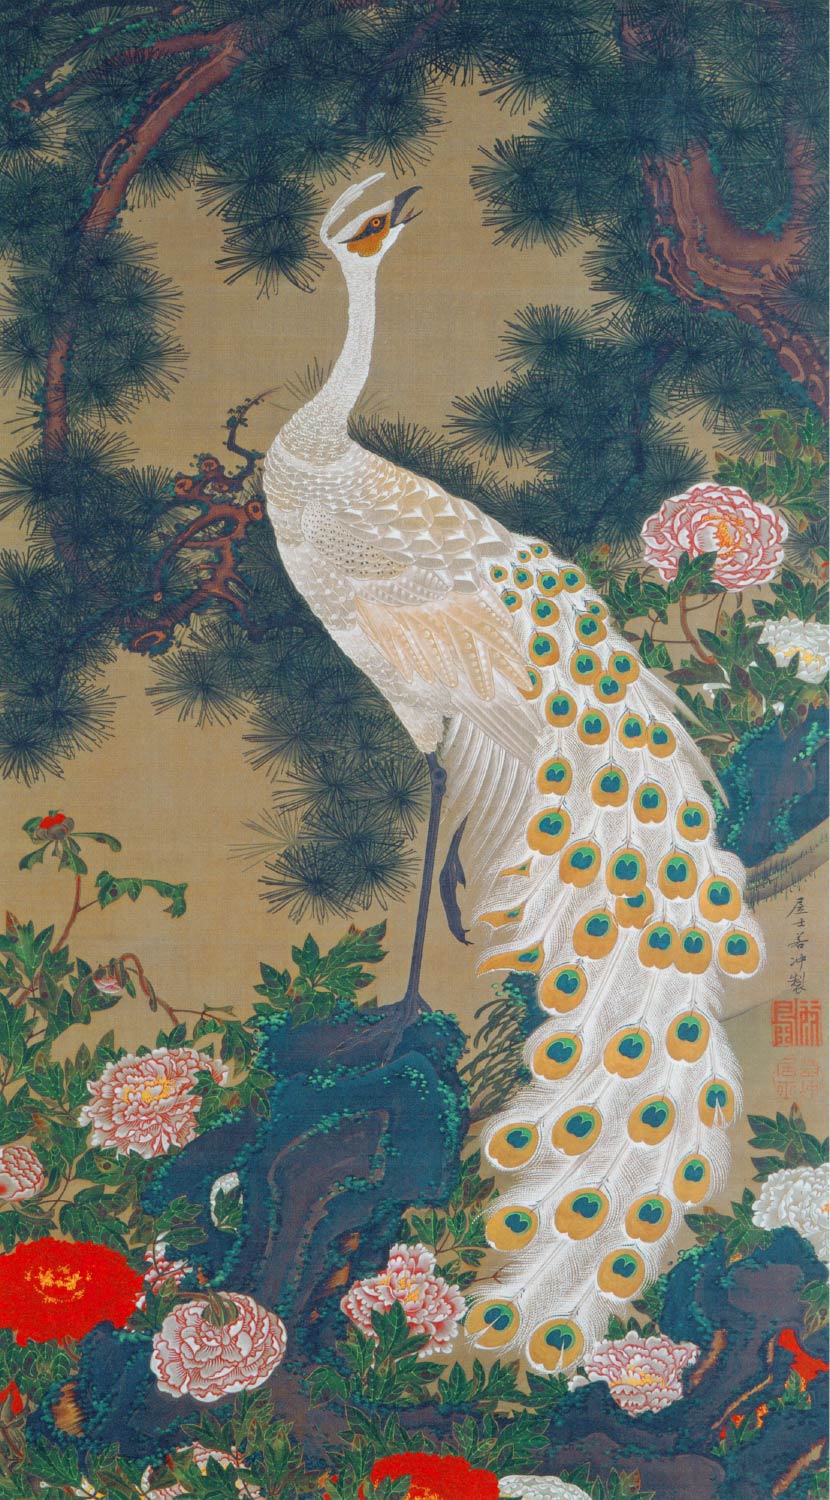 【無料壁紙】伊藤 若冲「老松孔雀図 (1761)」 / Ito Jakuchu_Rosho Kujaku-zu (Old Pine Tree and Peacock) (1761)